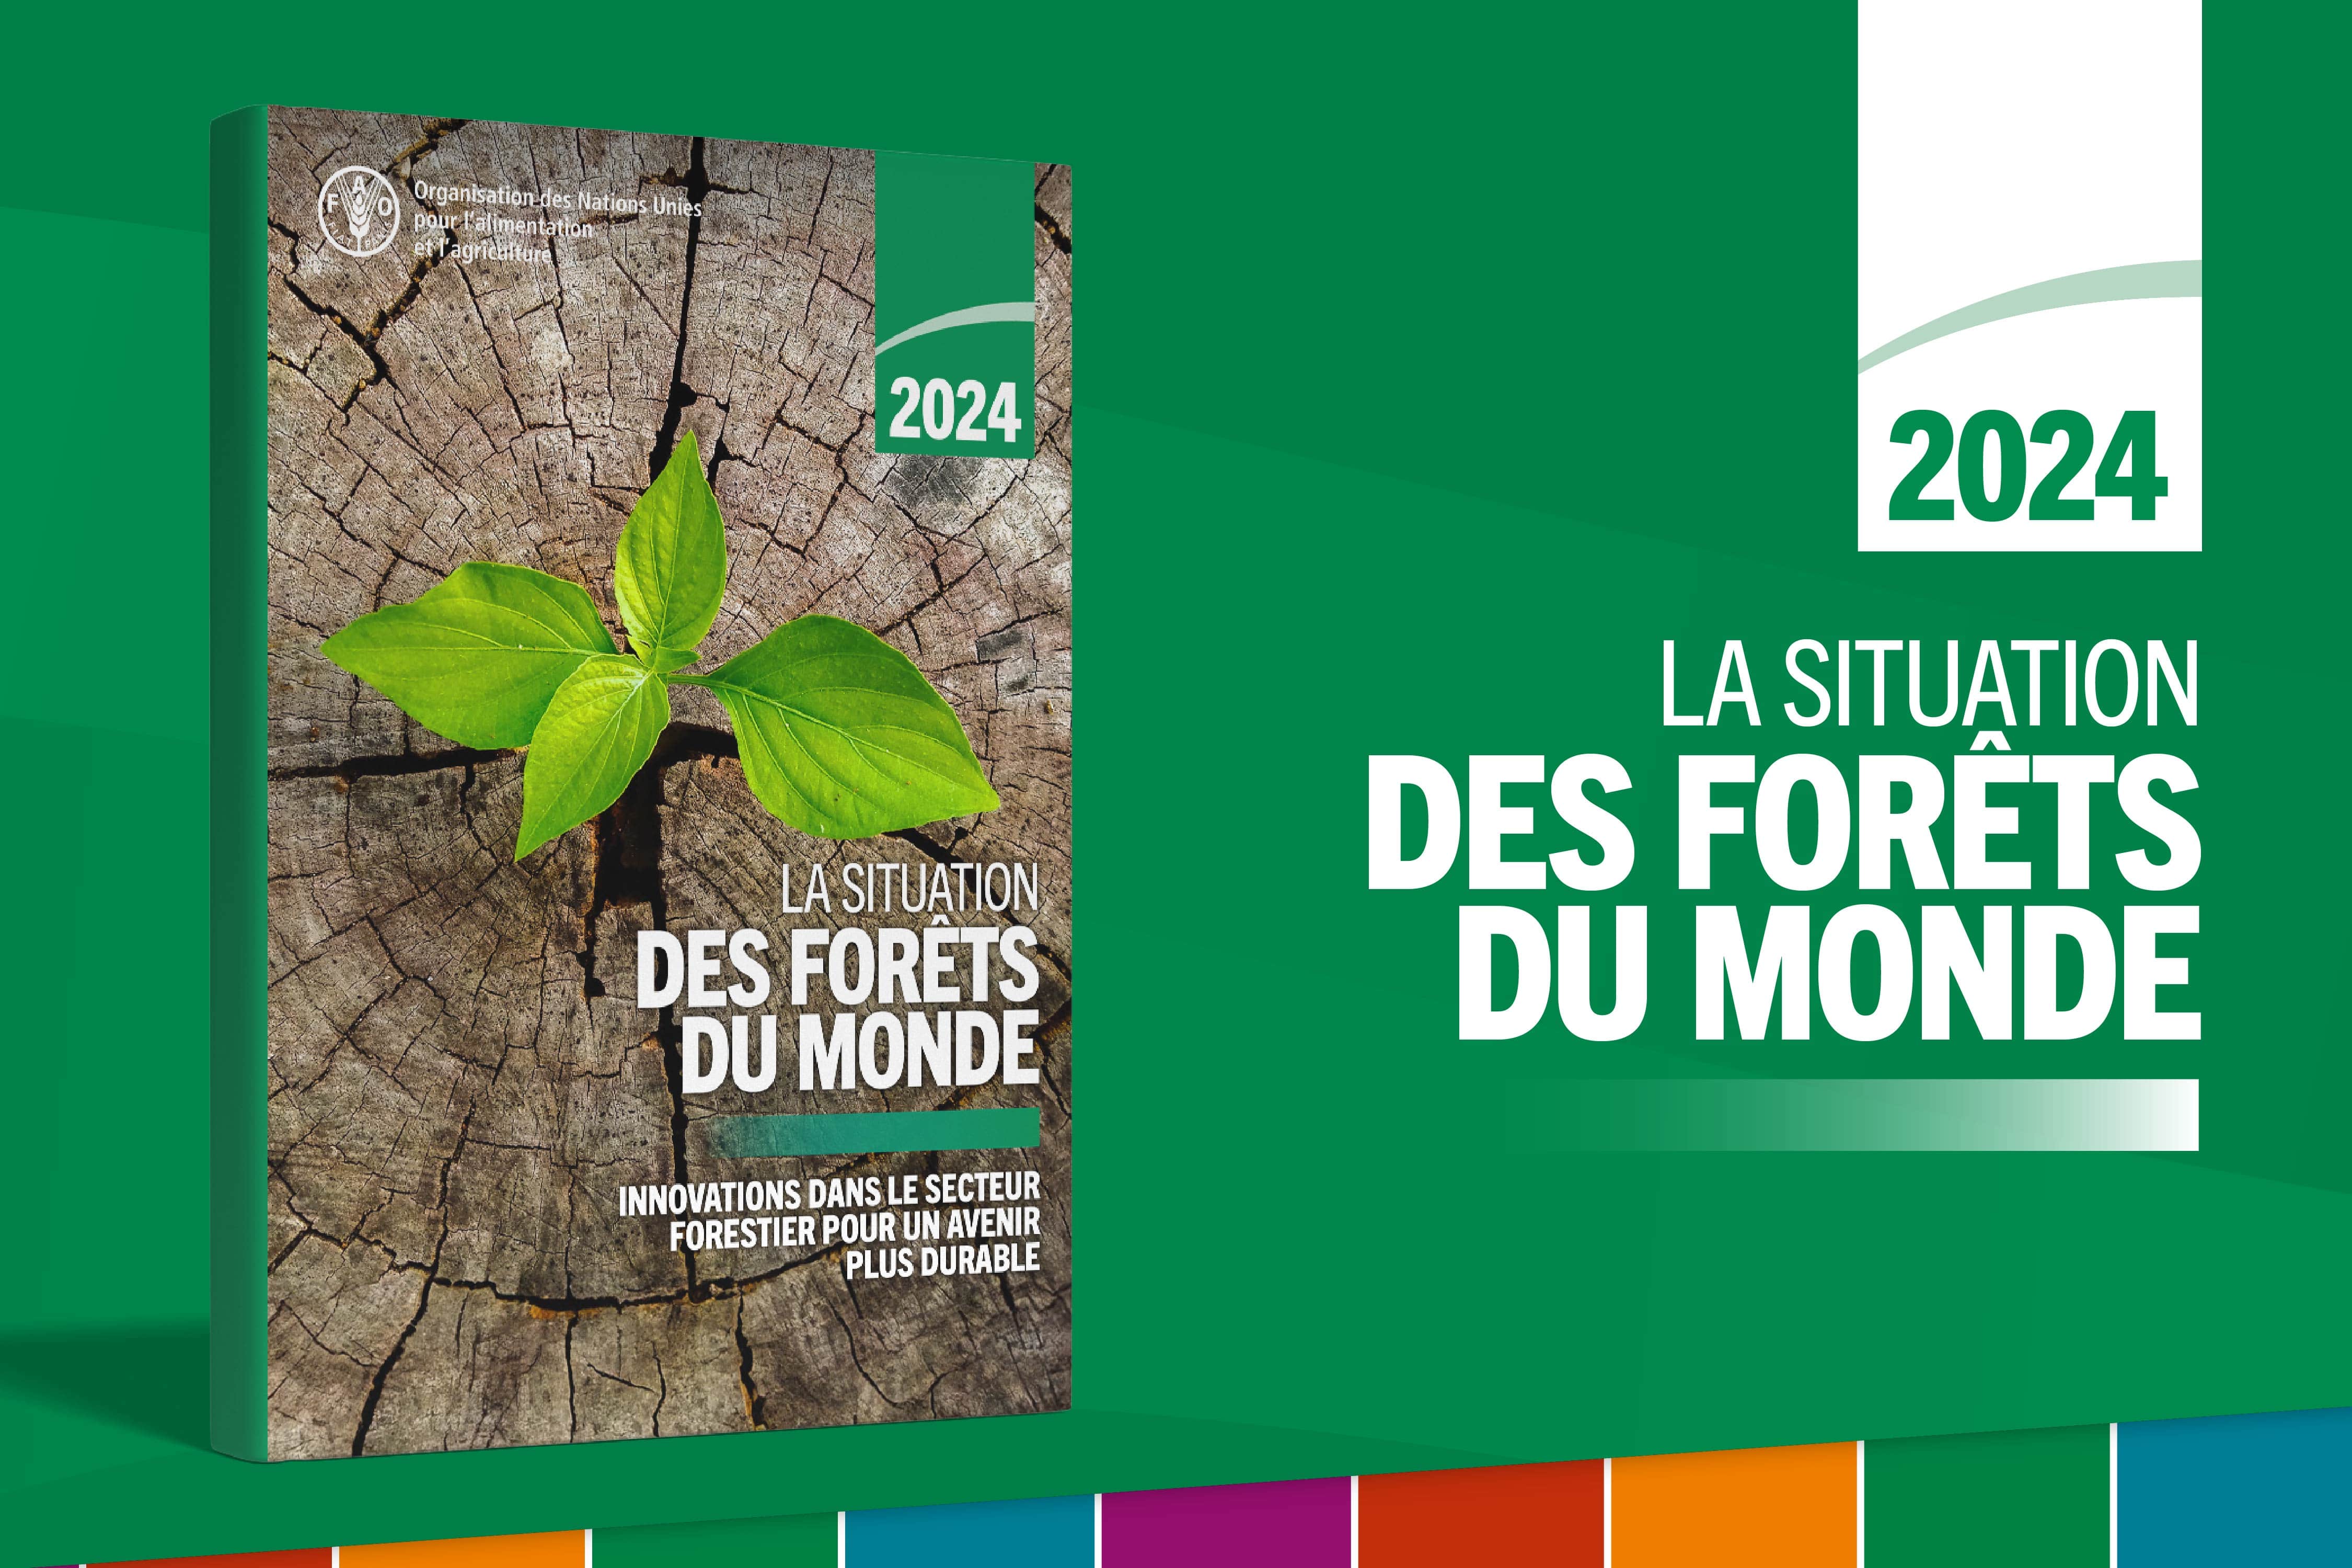 La Situation des forêts du monde 2024